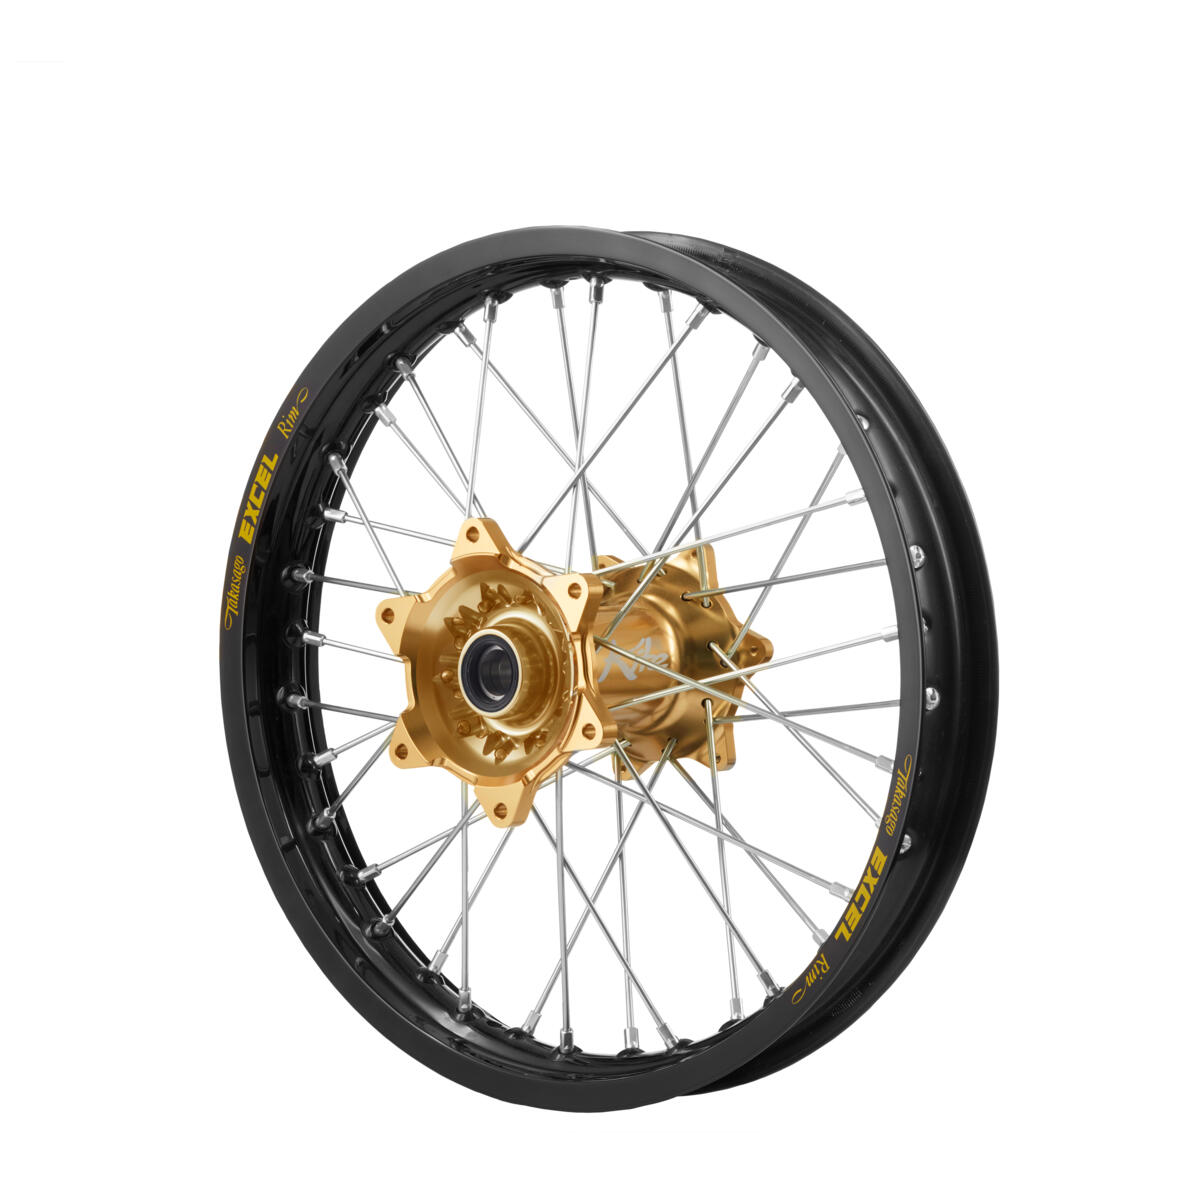 Hjul utformade för proffs! Exklusivt, högpresterande Kite-bakhjul som används av Team Yamaha.